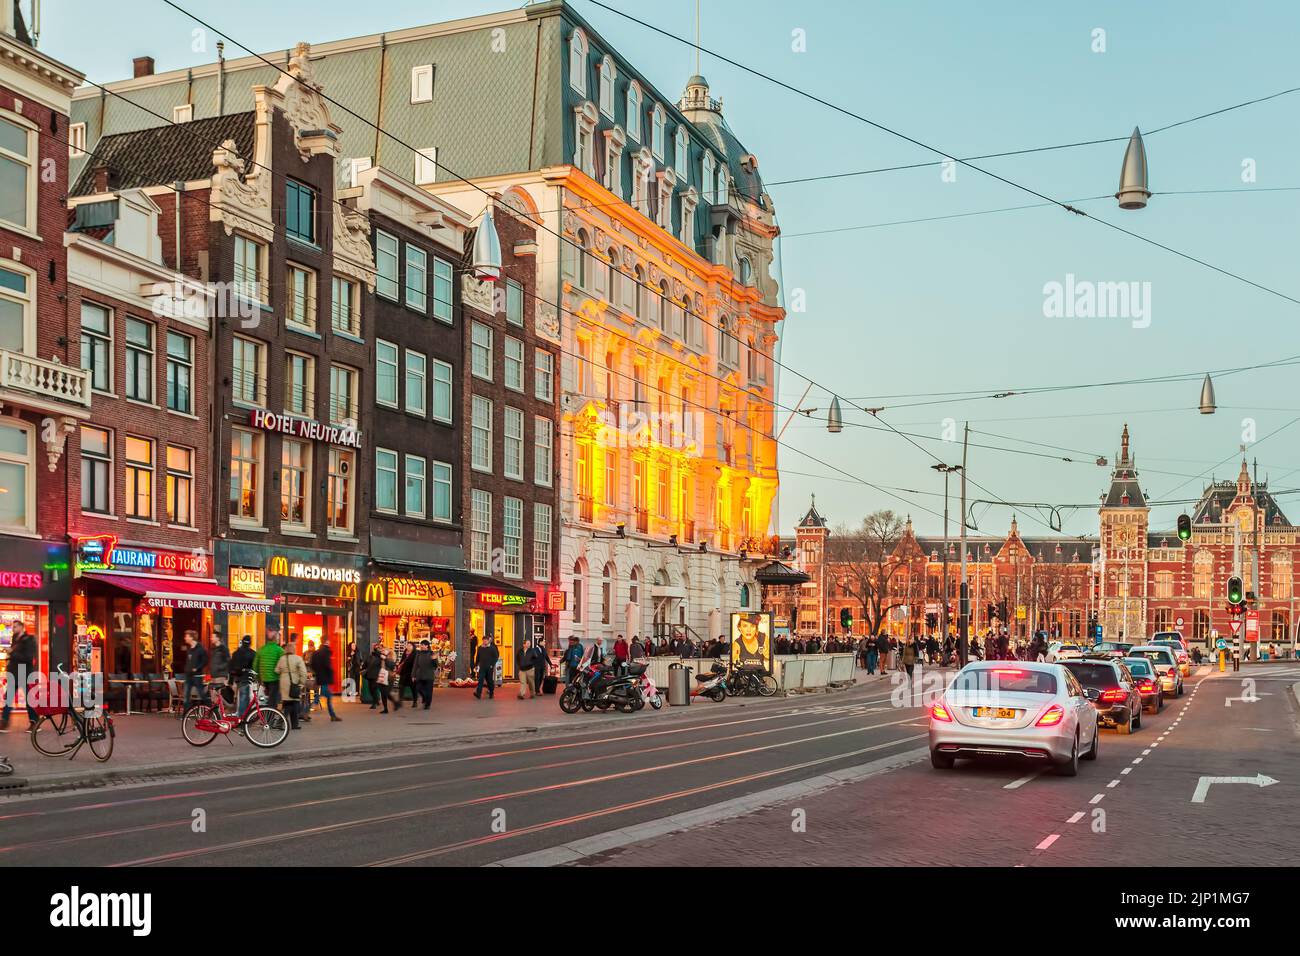 ÁMSTERDAM, PAÍSES BAJOS - 12 DE MARZO de 2015: Vista al atardecer del famoso Damrak con tiendas, hoteles y barcos en los canales de Ámsterdam, Países Bajos Foto de stock